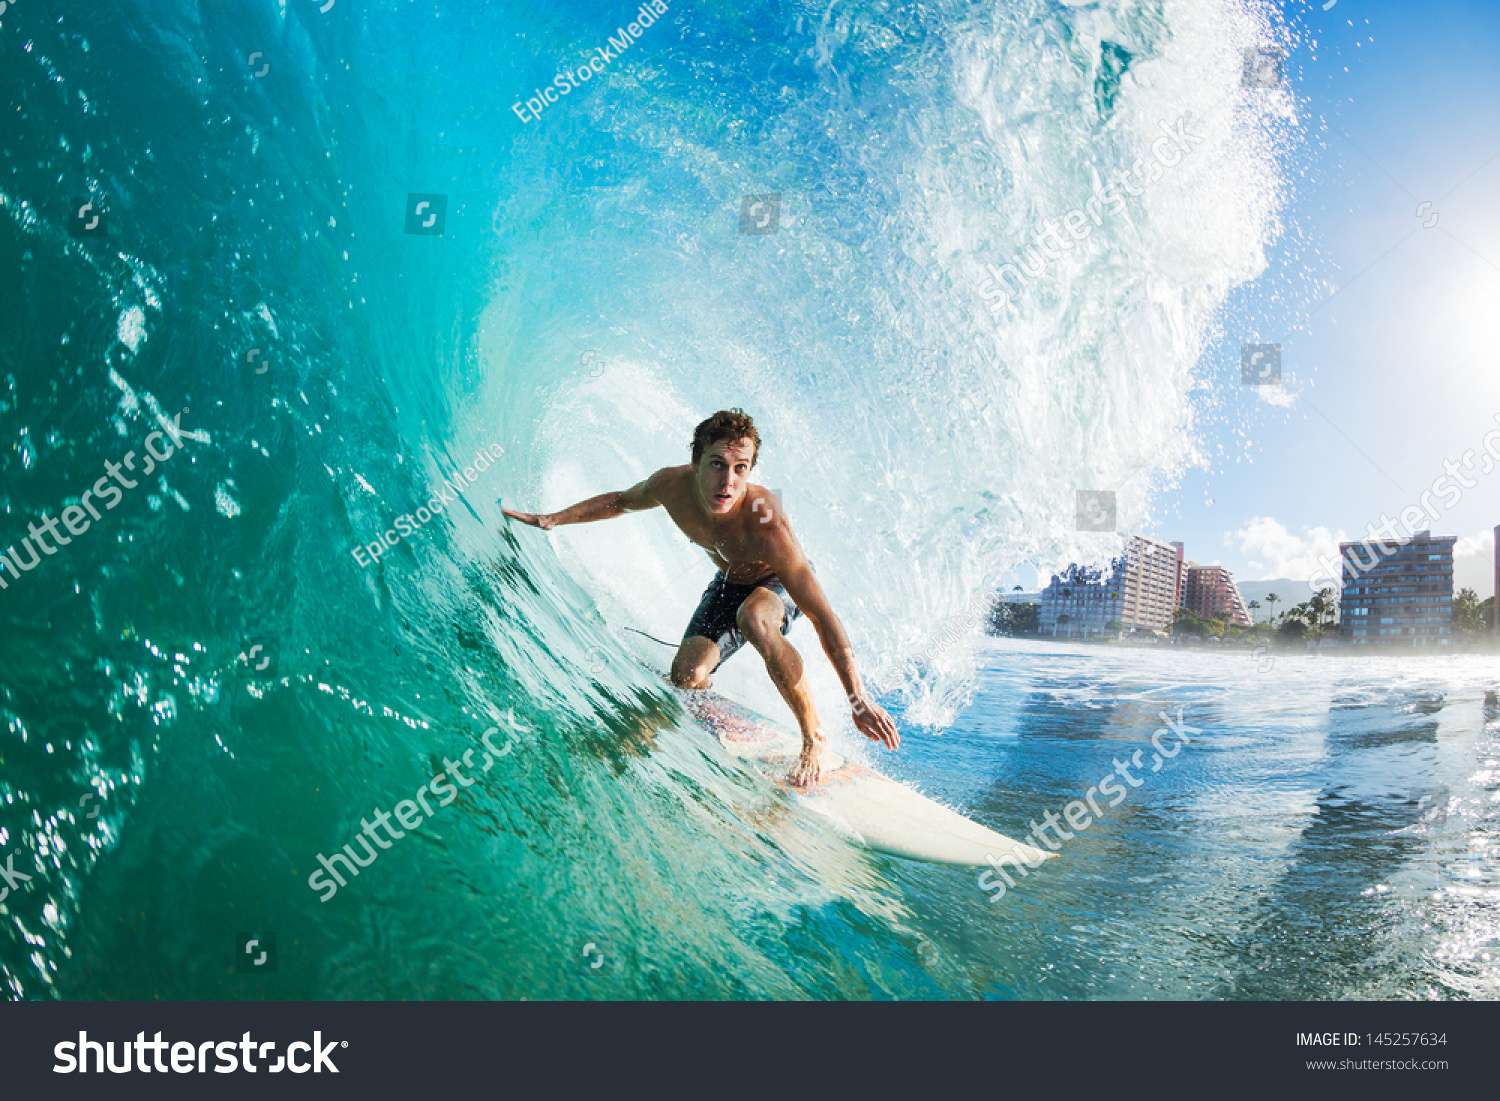 Surfer on Blue Ocean Wave Getting Barreled #145257634